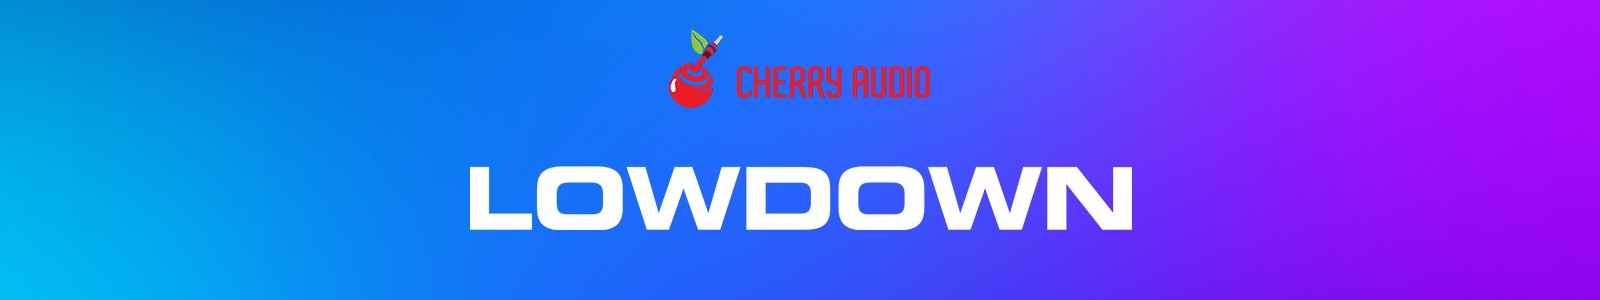 Lowdown Bass Synthesizer by Cherry Audio